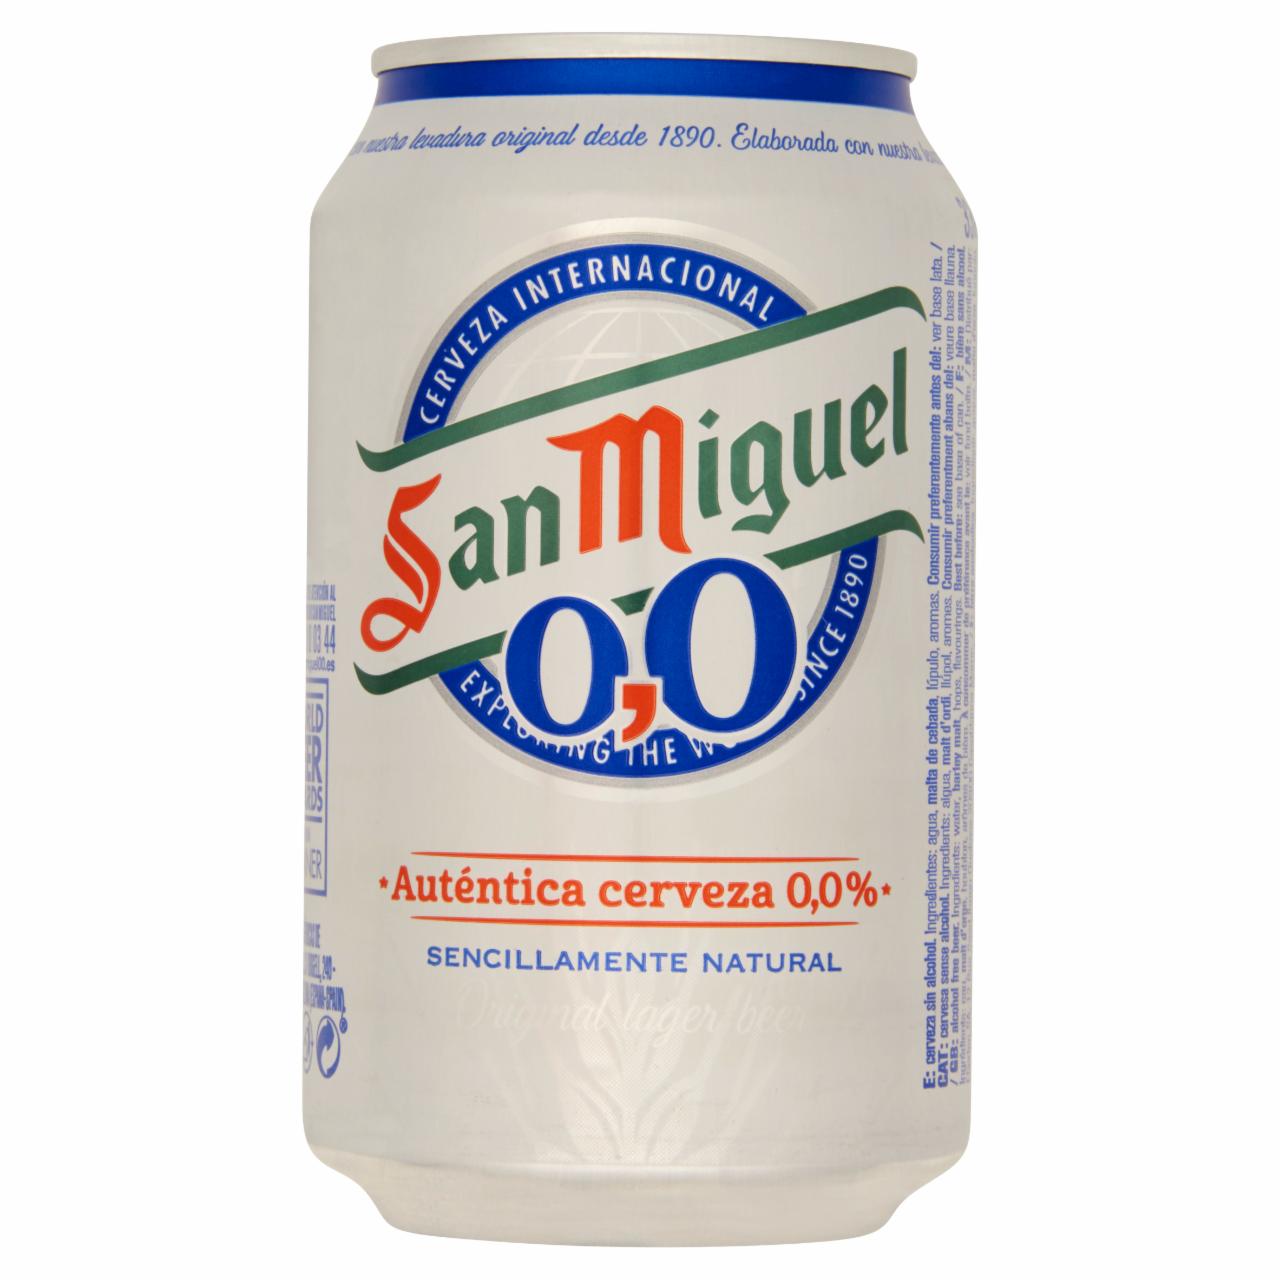 Képek - San Miguel alkoholmentes prémium világos sör 33 cl